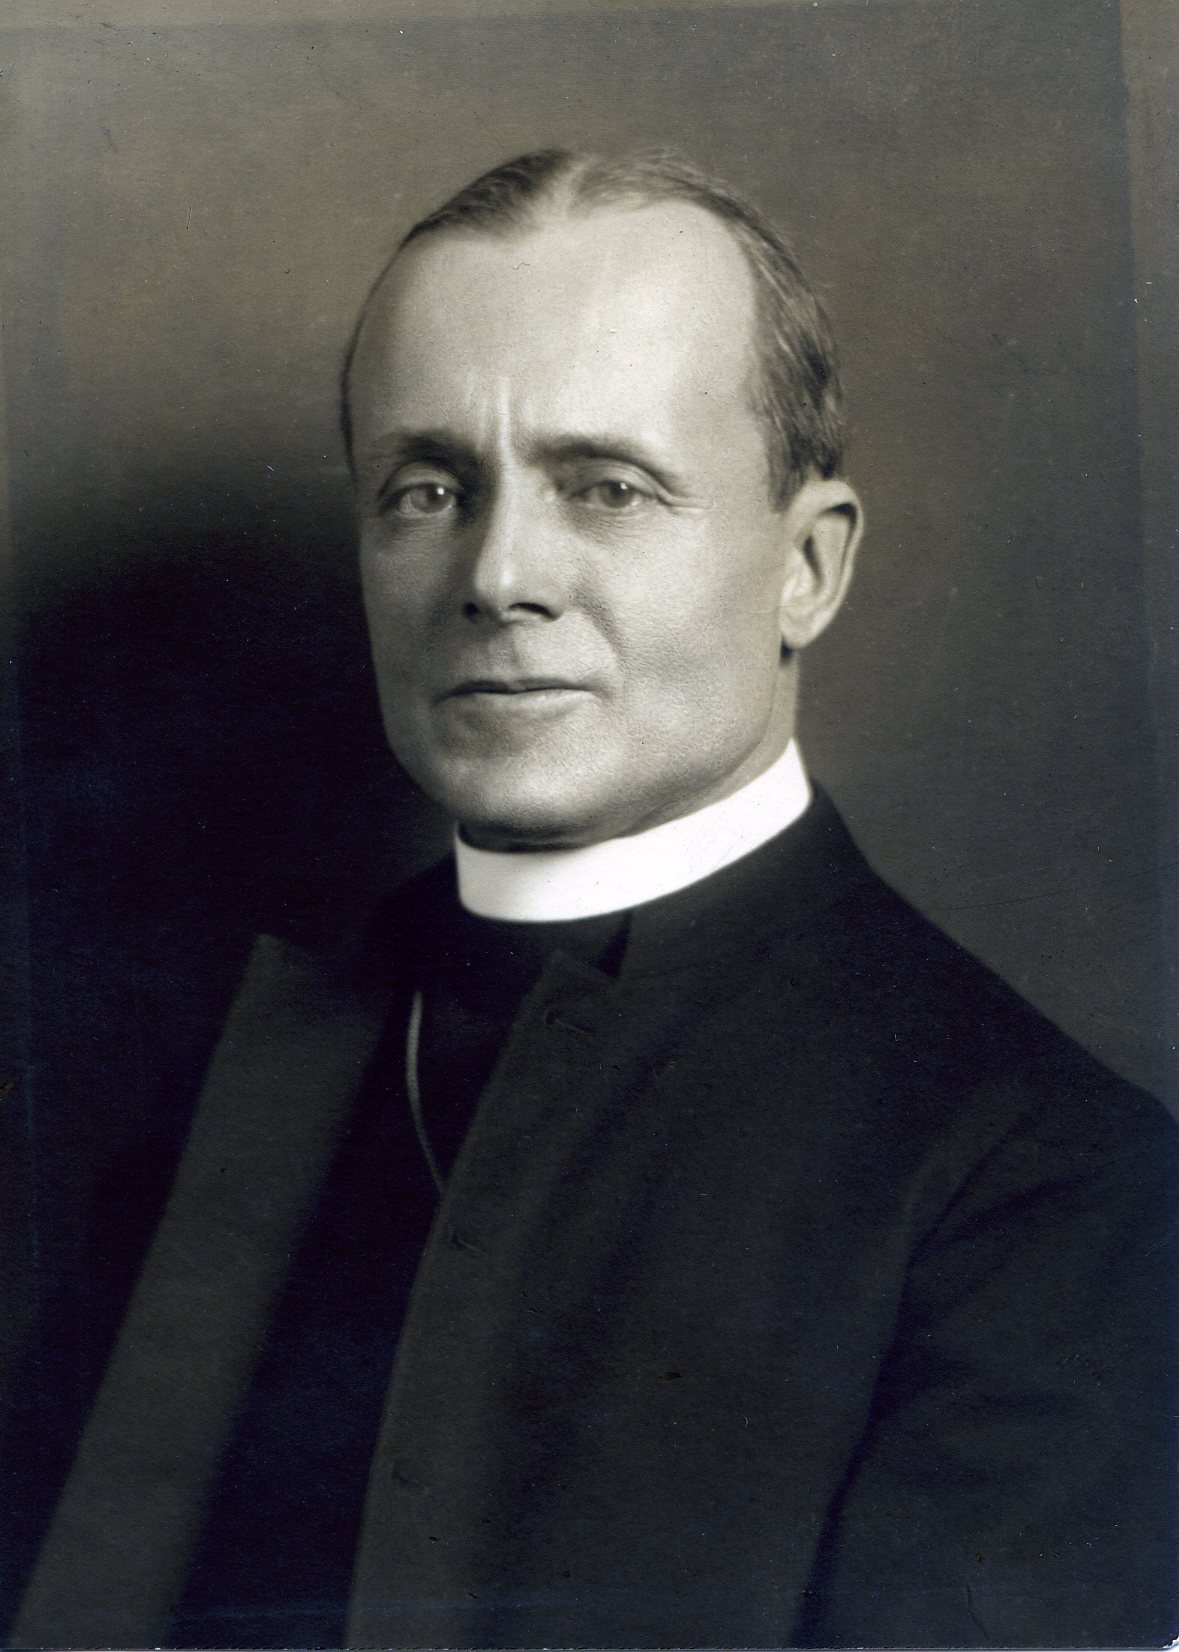 Member portrait of William T. Manning